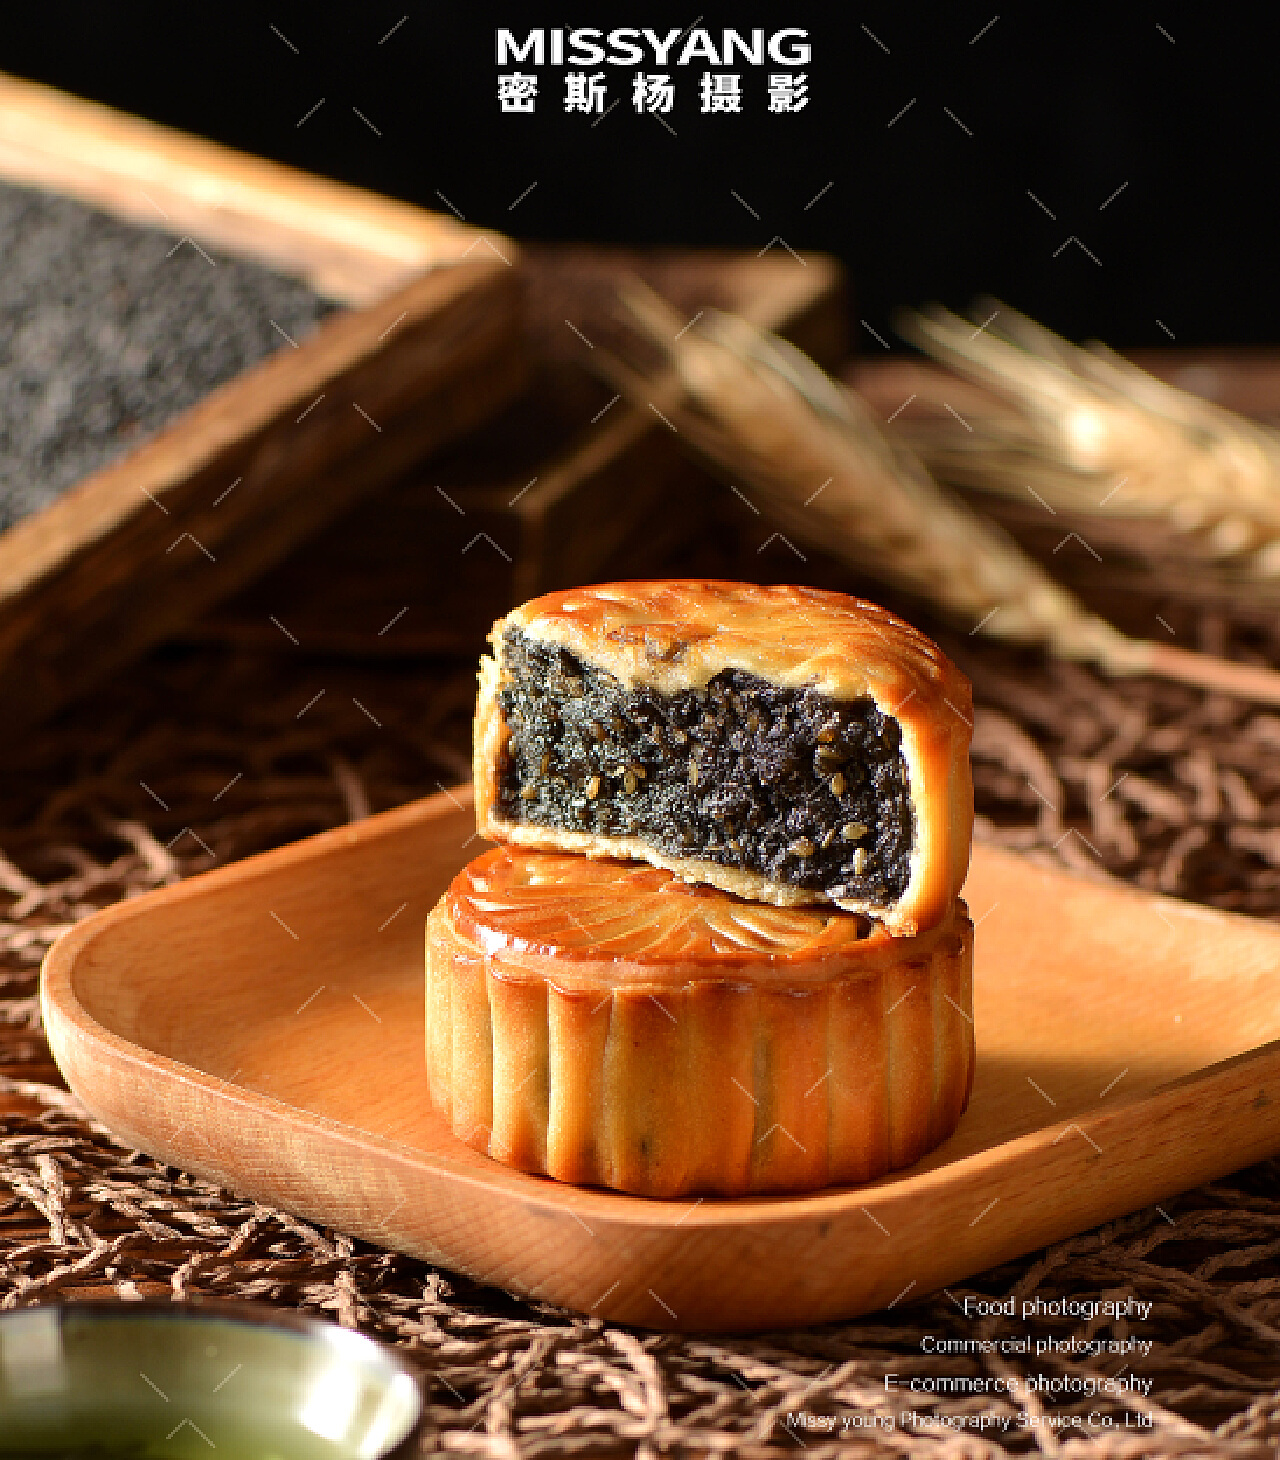 爱厨房的幸福之味: 黑芝麻月饼 Black Sesame Moon Cake